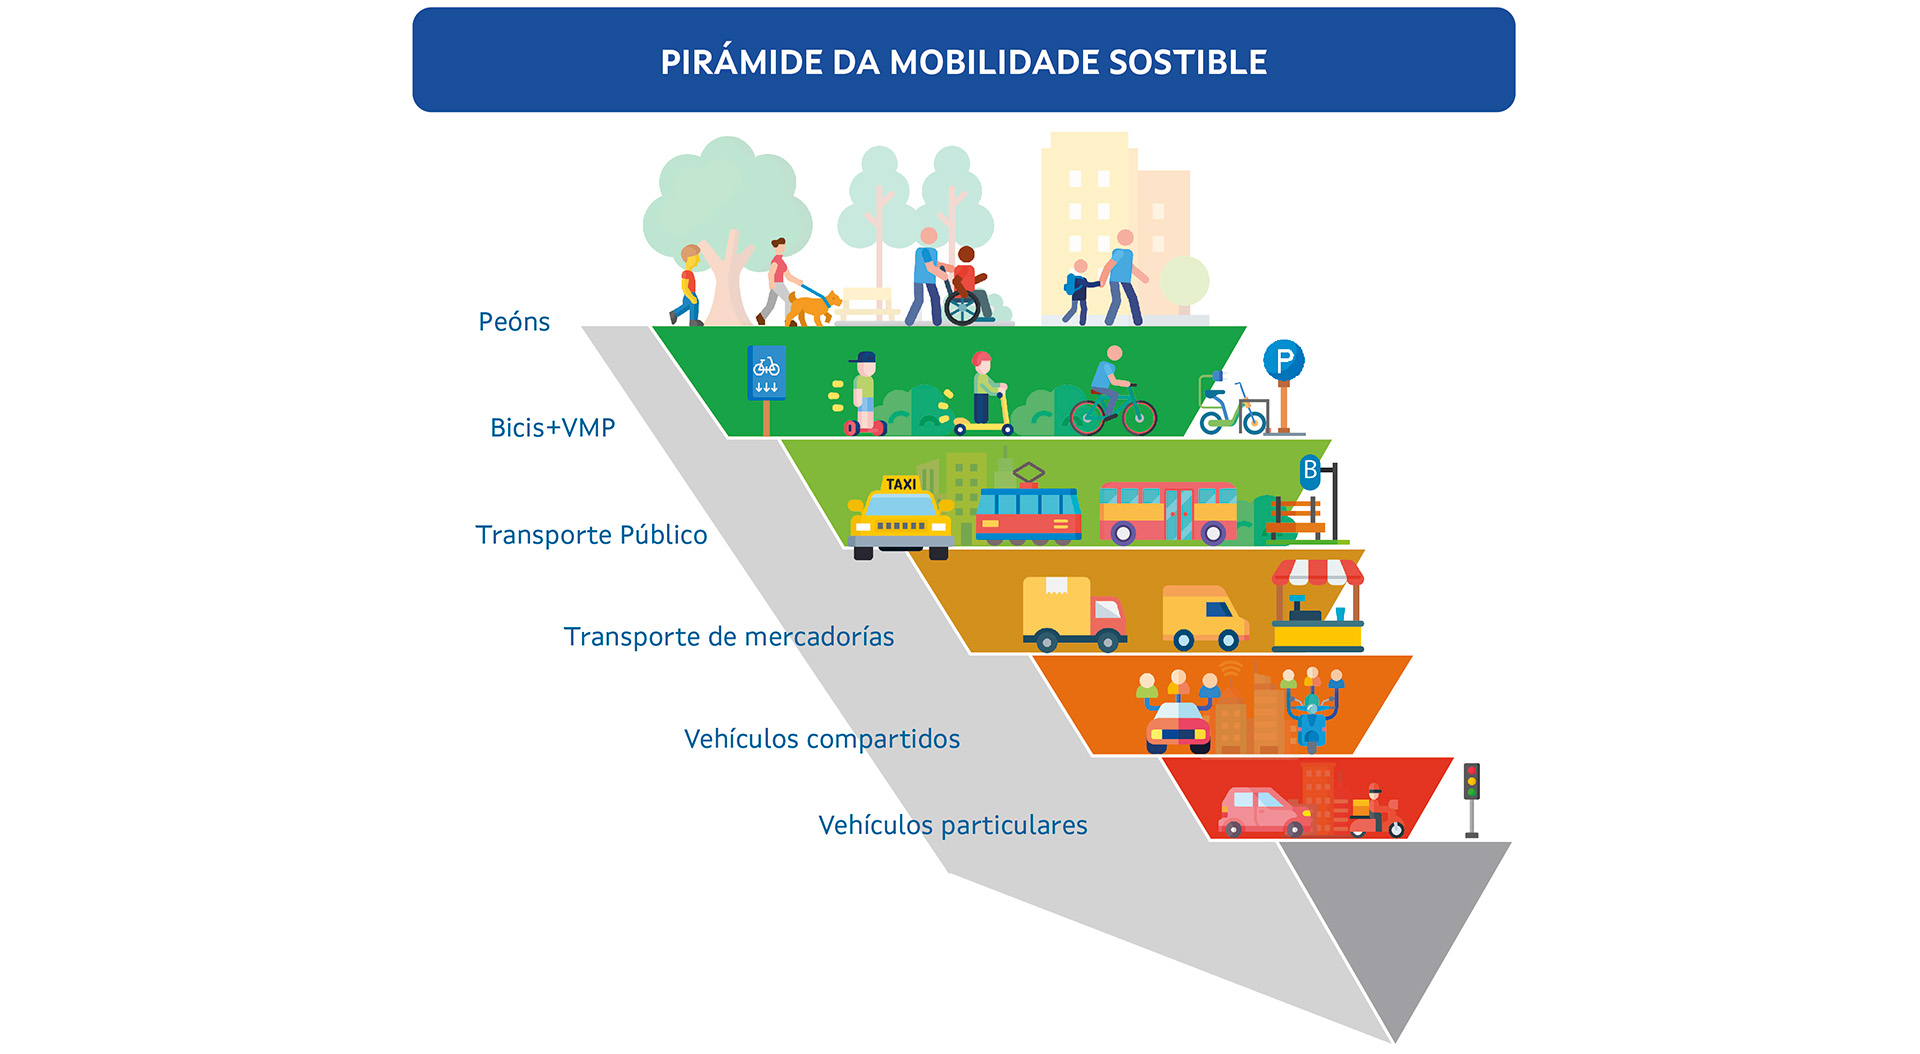 Pirámide de mobilidade